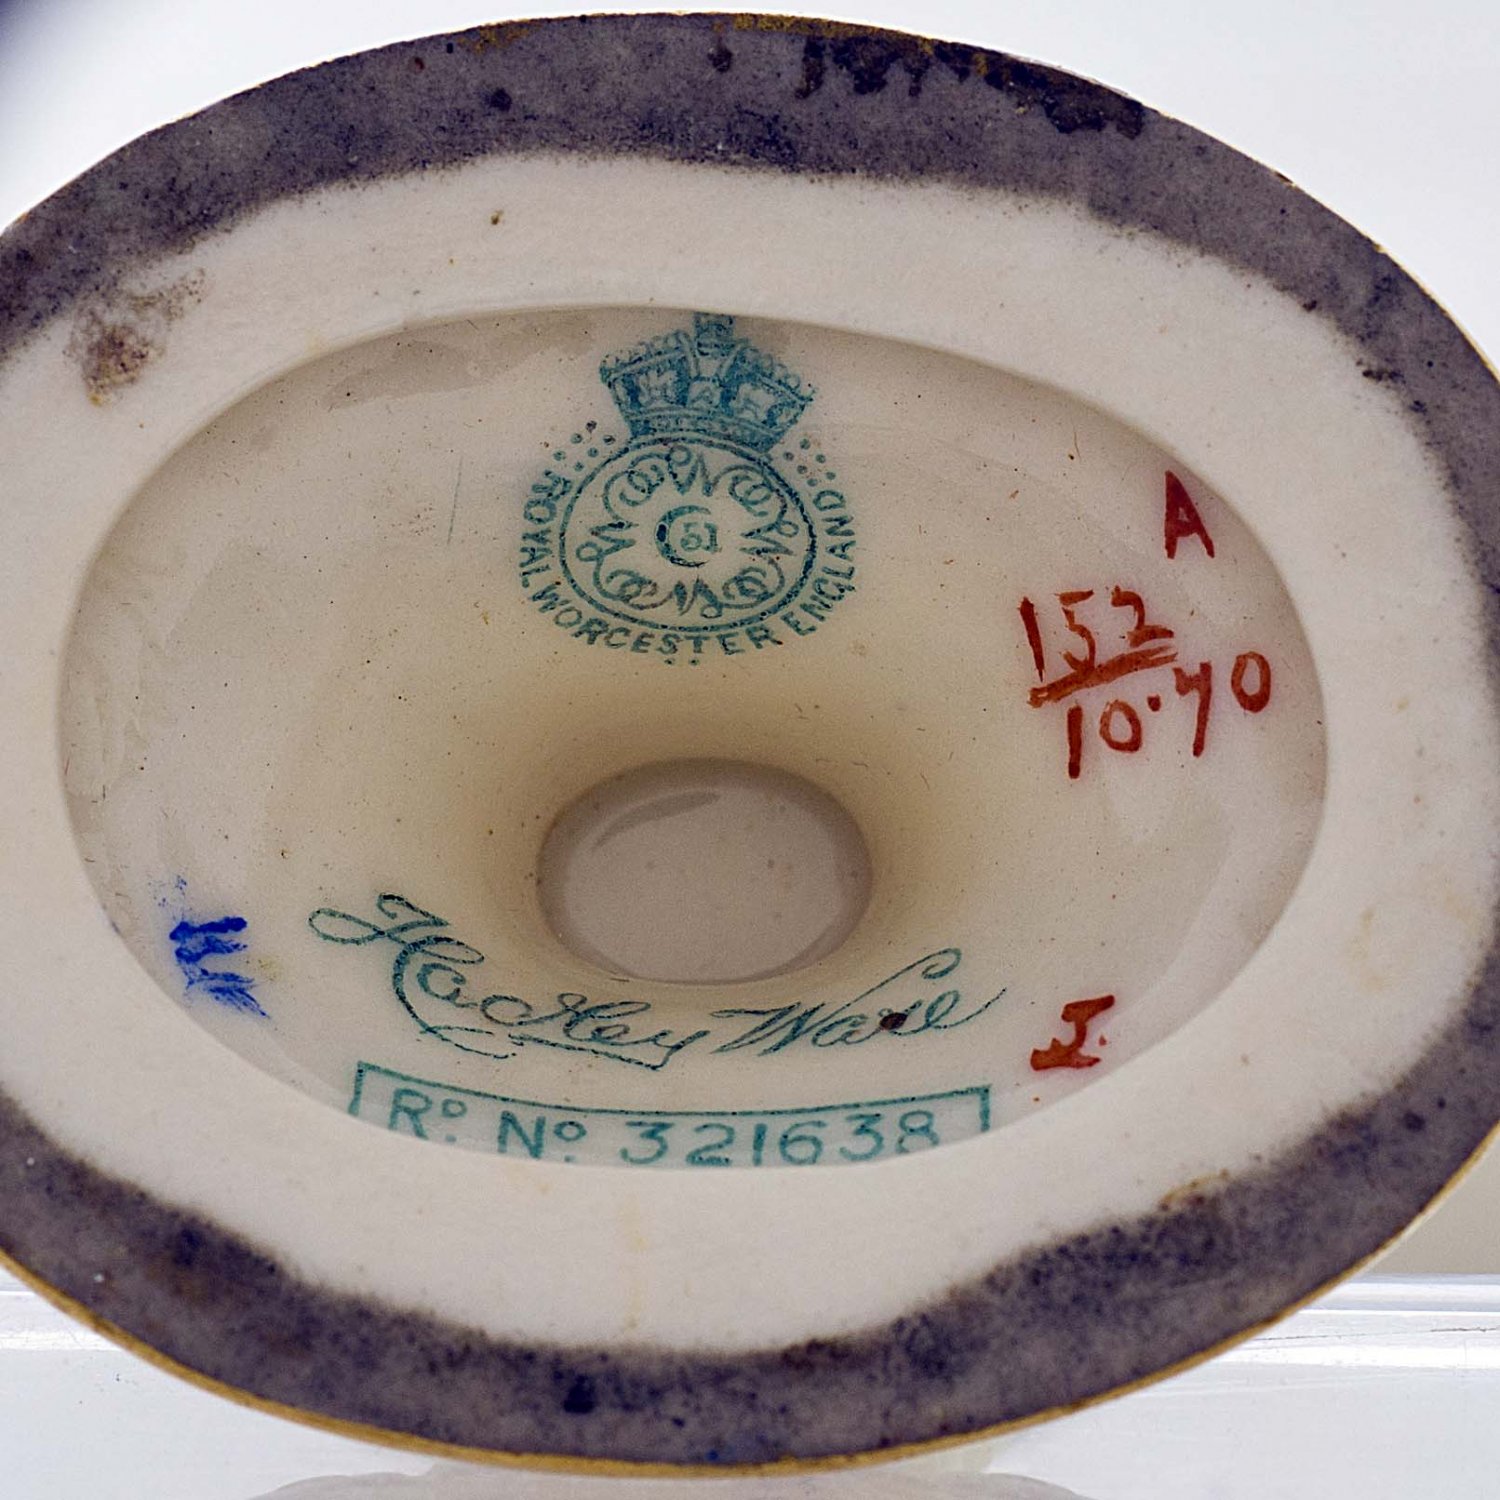 [H443] Royal Worcester Lidded Urn With Animal Mask Handles